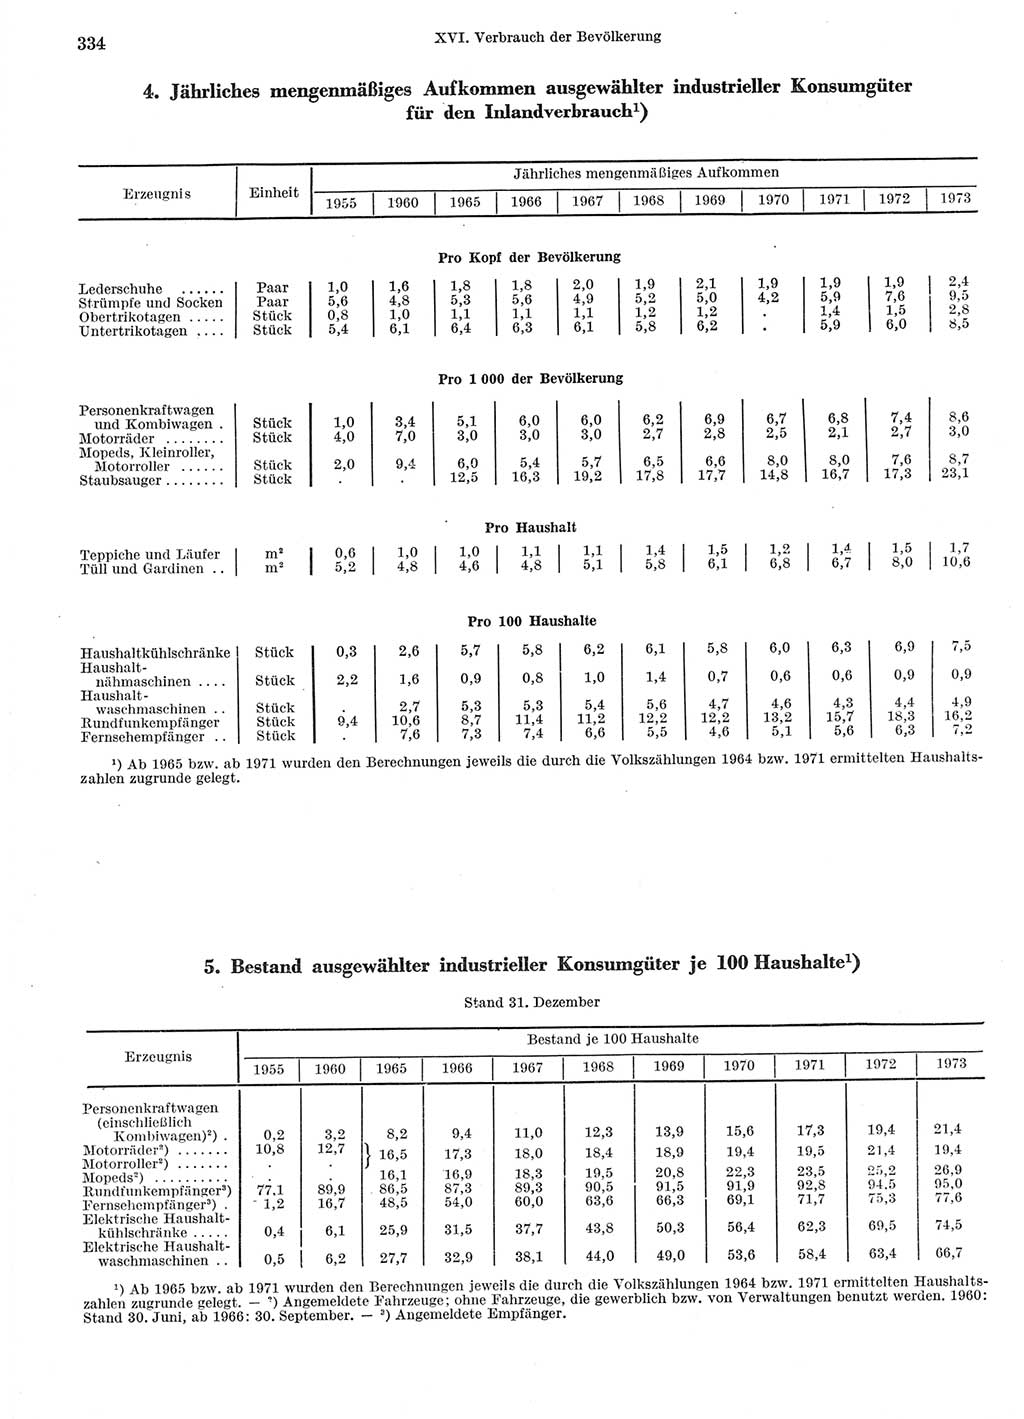 Statistisches Jahrbuch der Deutschen Demokratischen Republik (DDR) 1974, Seite 334 (Stat. Jb. DDR 1974, S. 334)